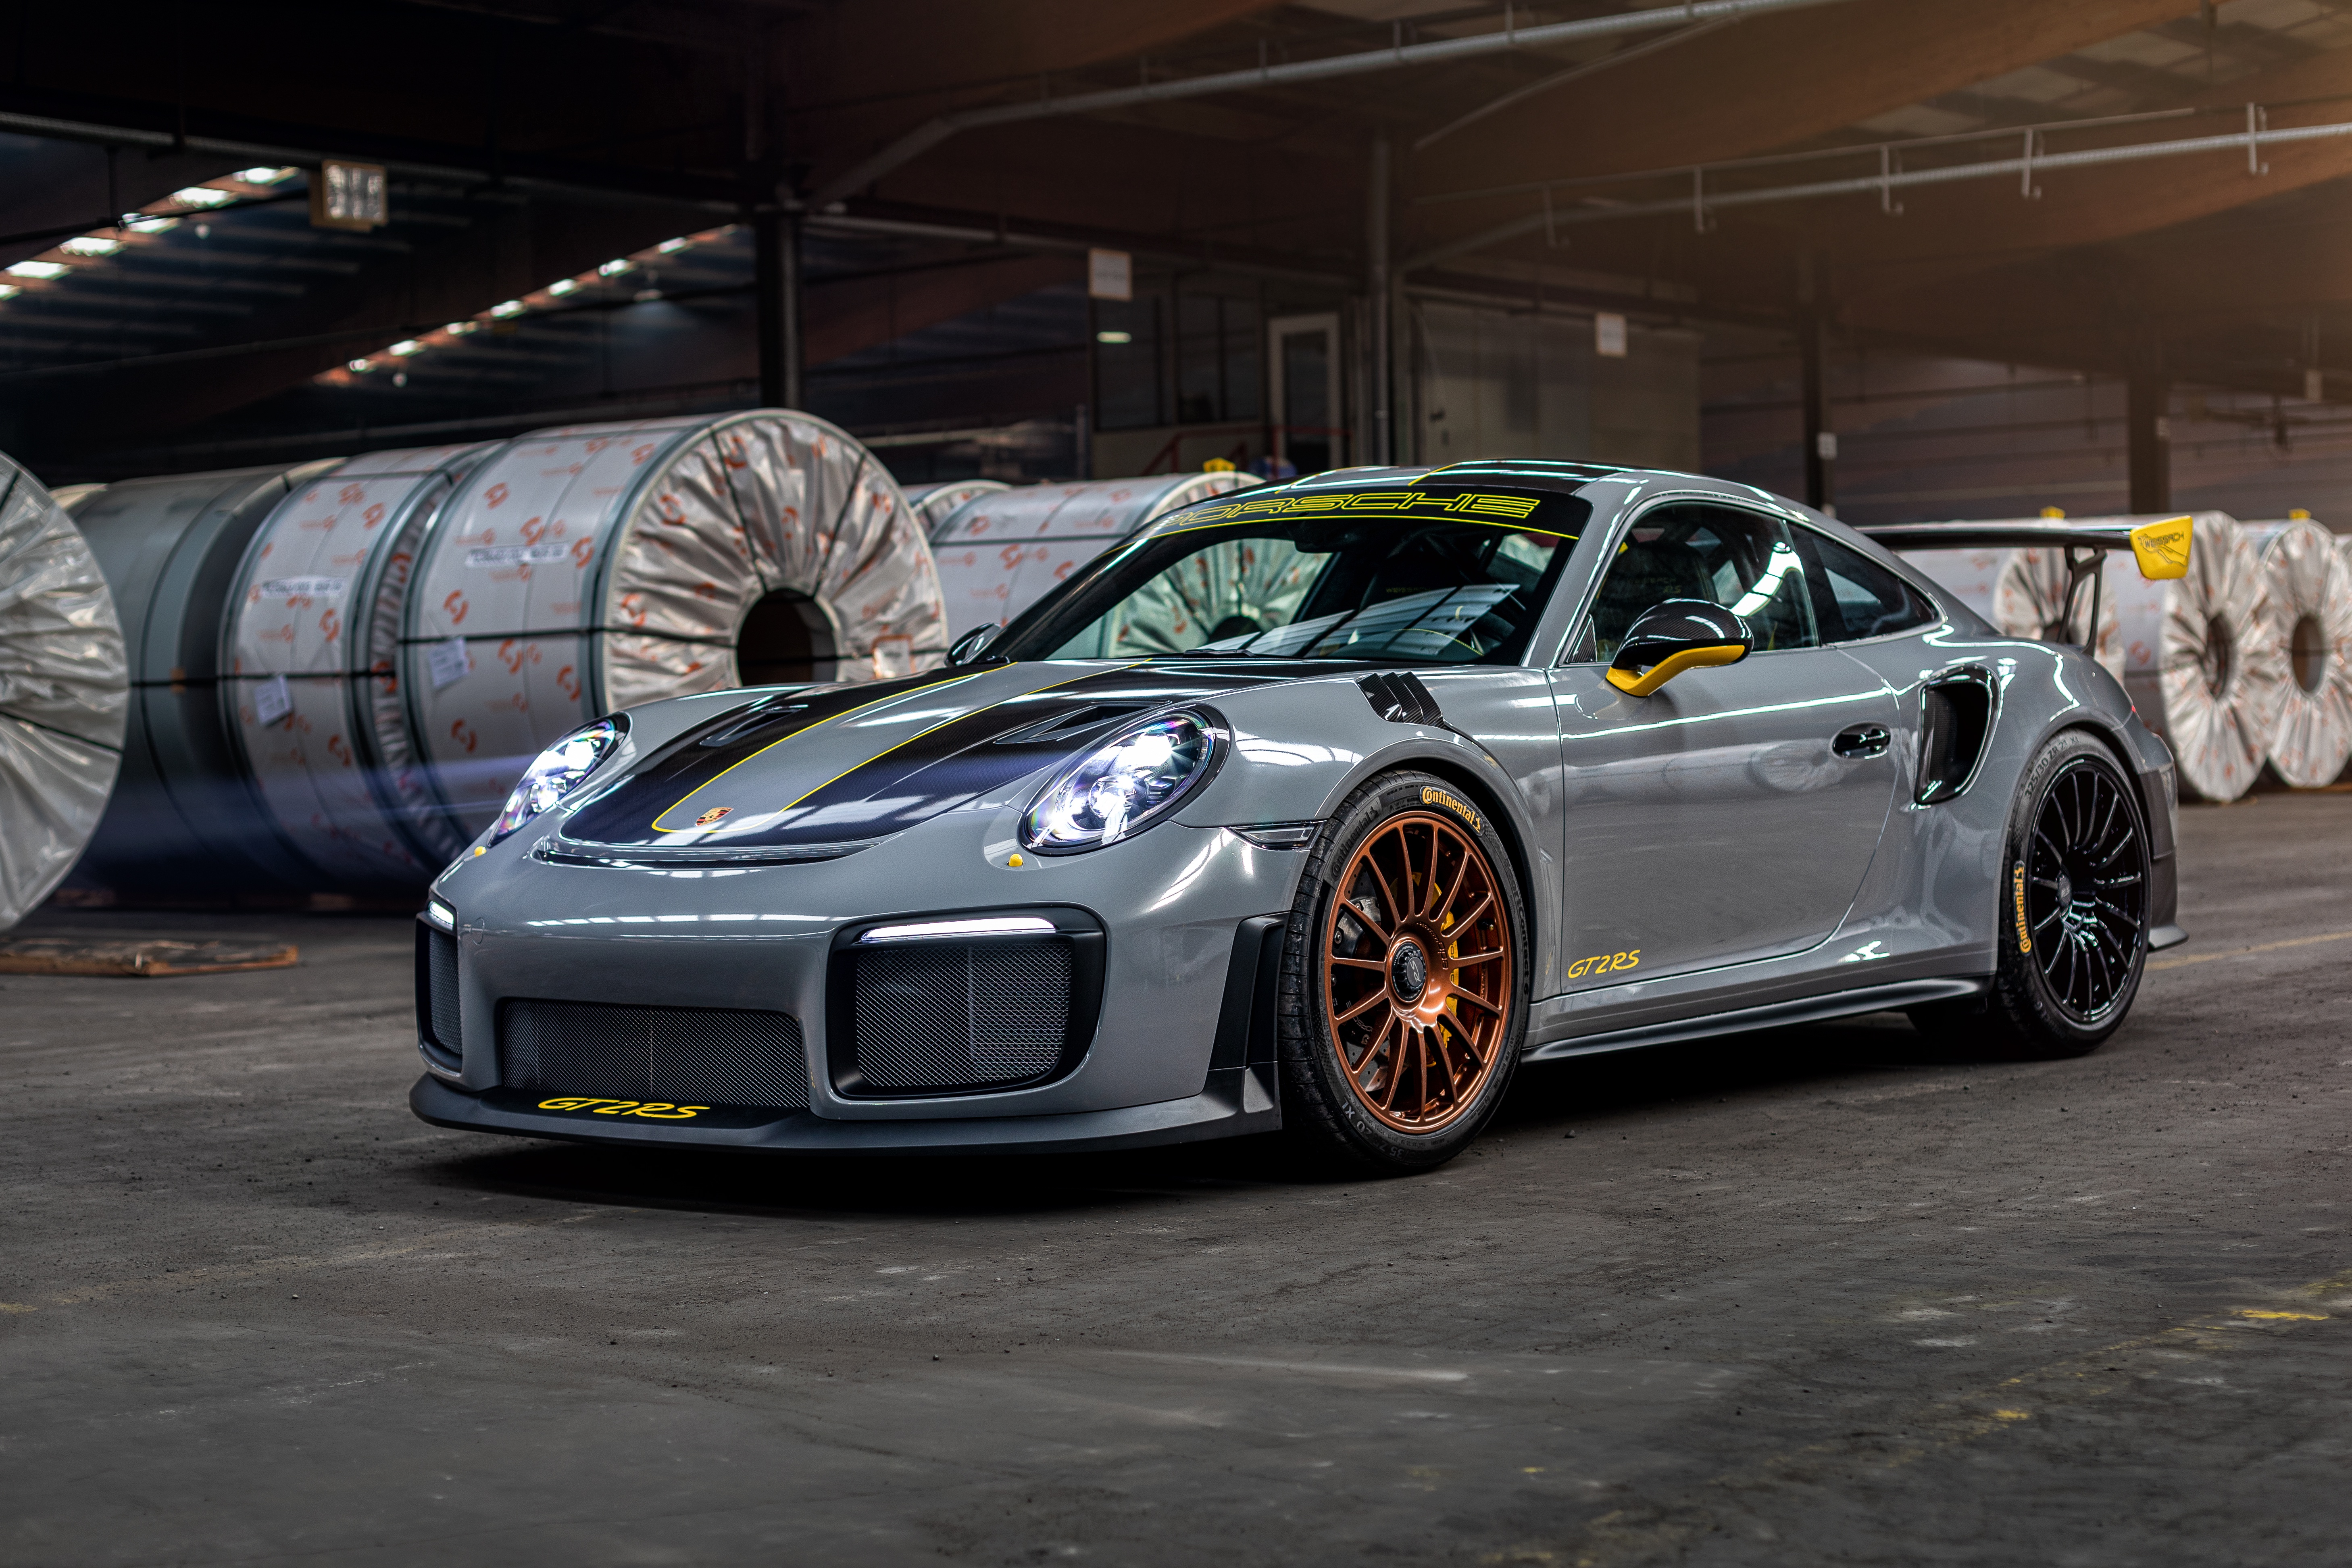 Télécharger des fonds d'écran Porsche 911 Gt2 Rs HD